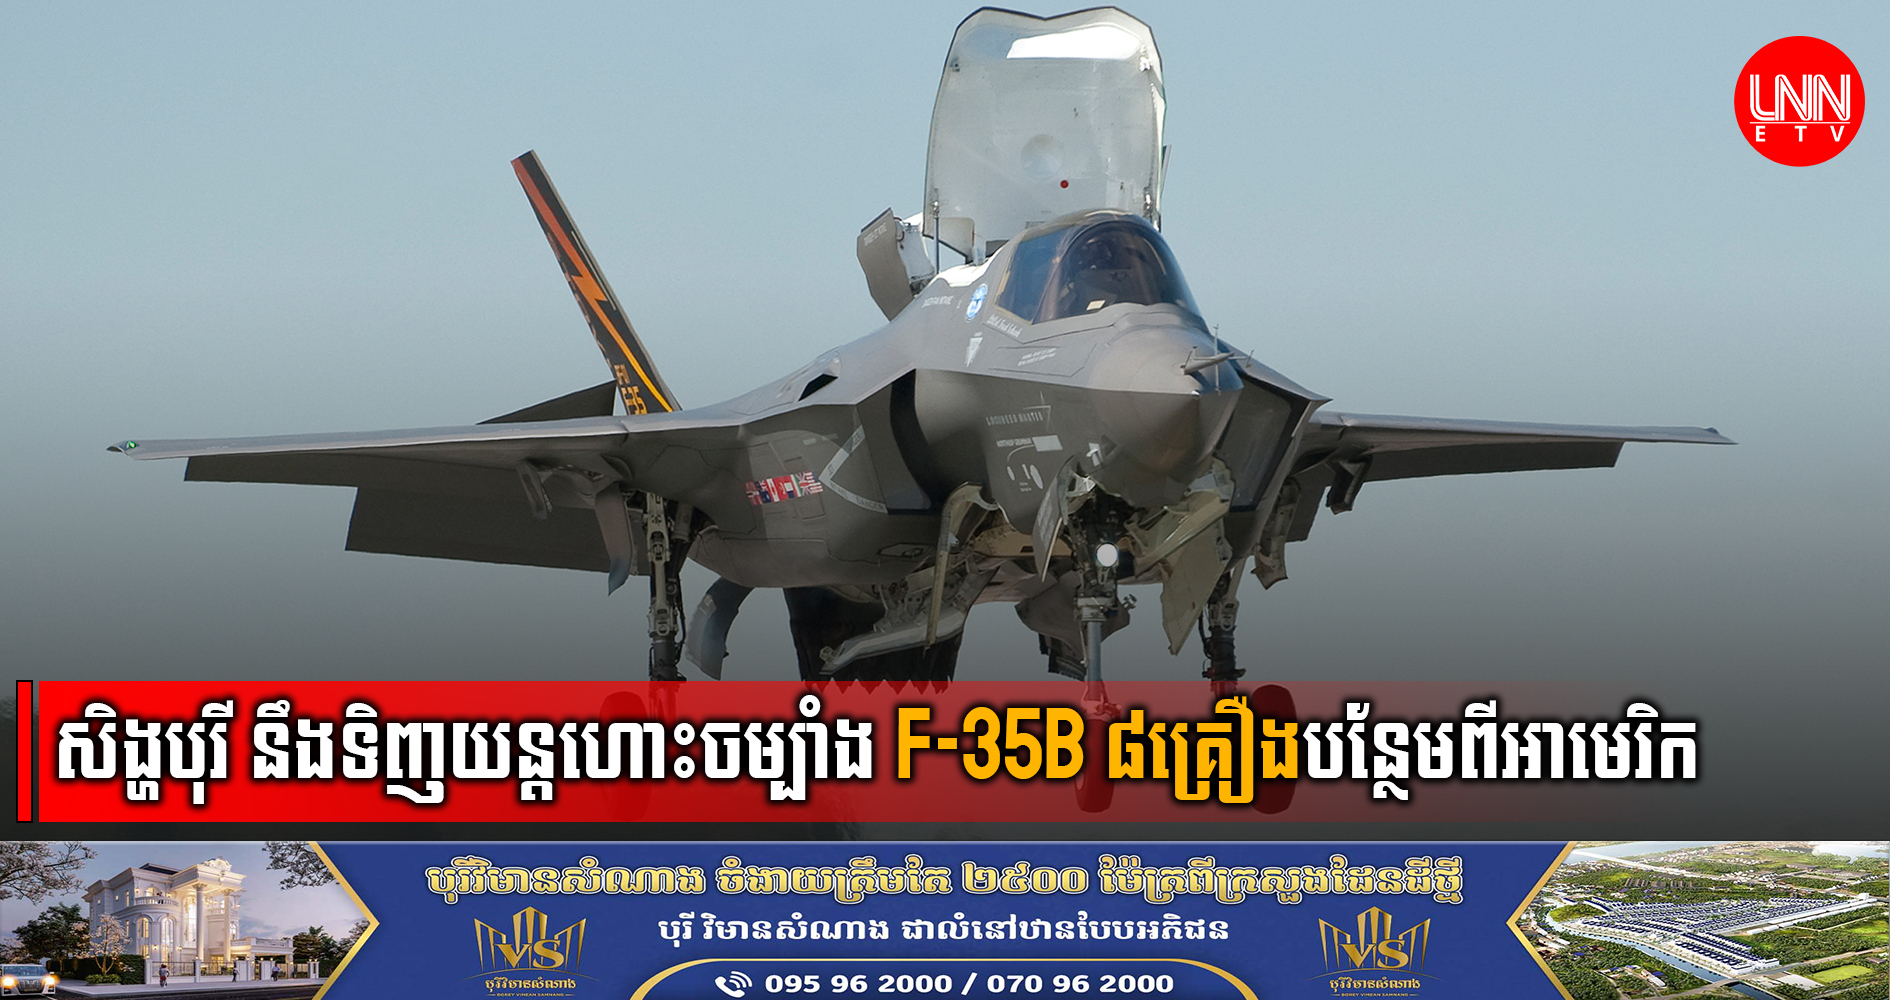 ប្រទេសសិង្ហបុរី នឹងទិញយន្ដហោះចម្បាំង F-35B ចំនួន ៨គ្រឿងបន្ថែម ពីសហរដ្ឋអាមេរិក